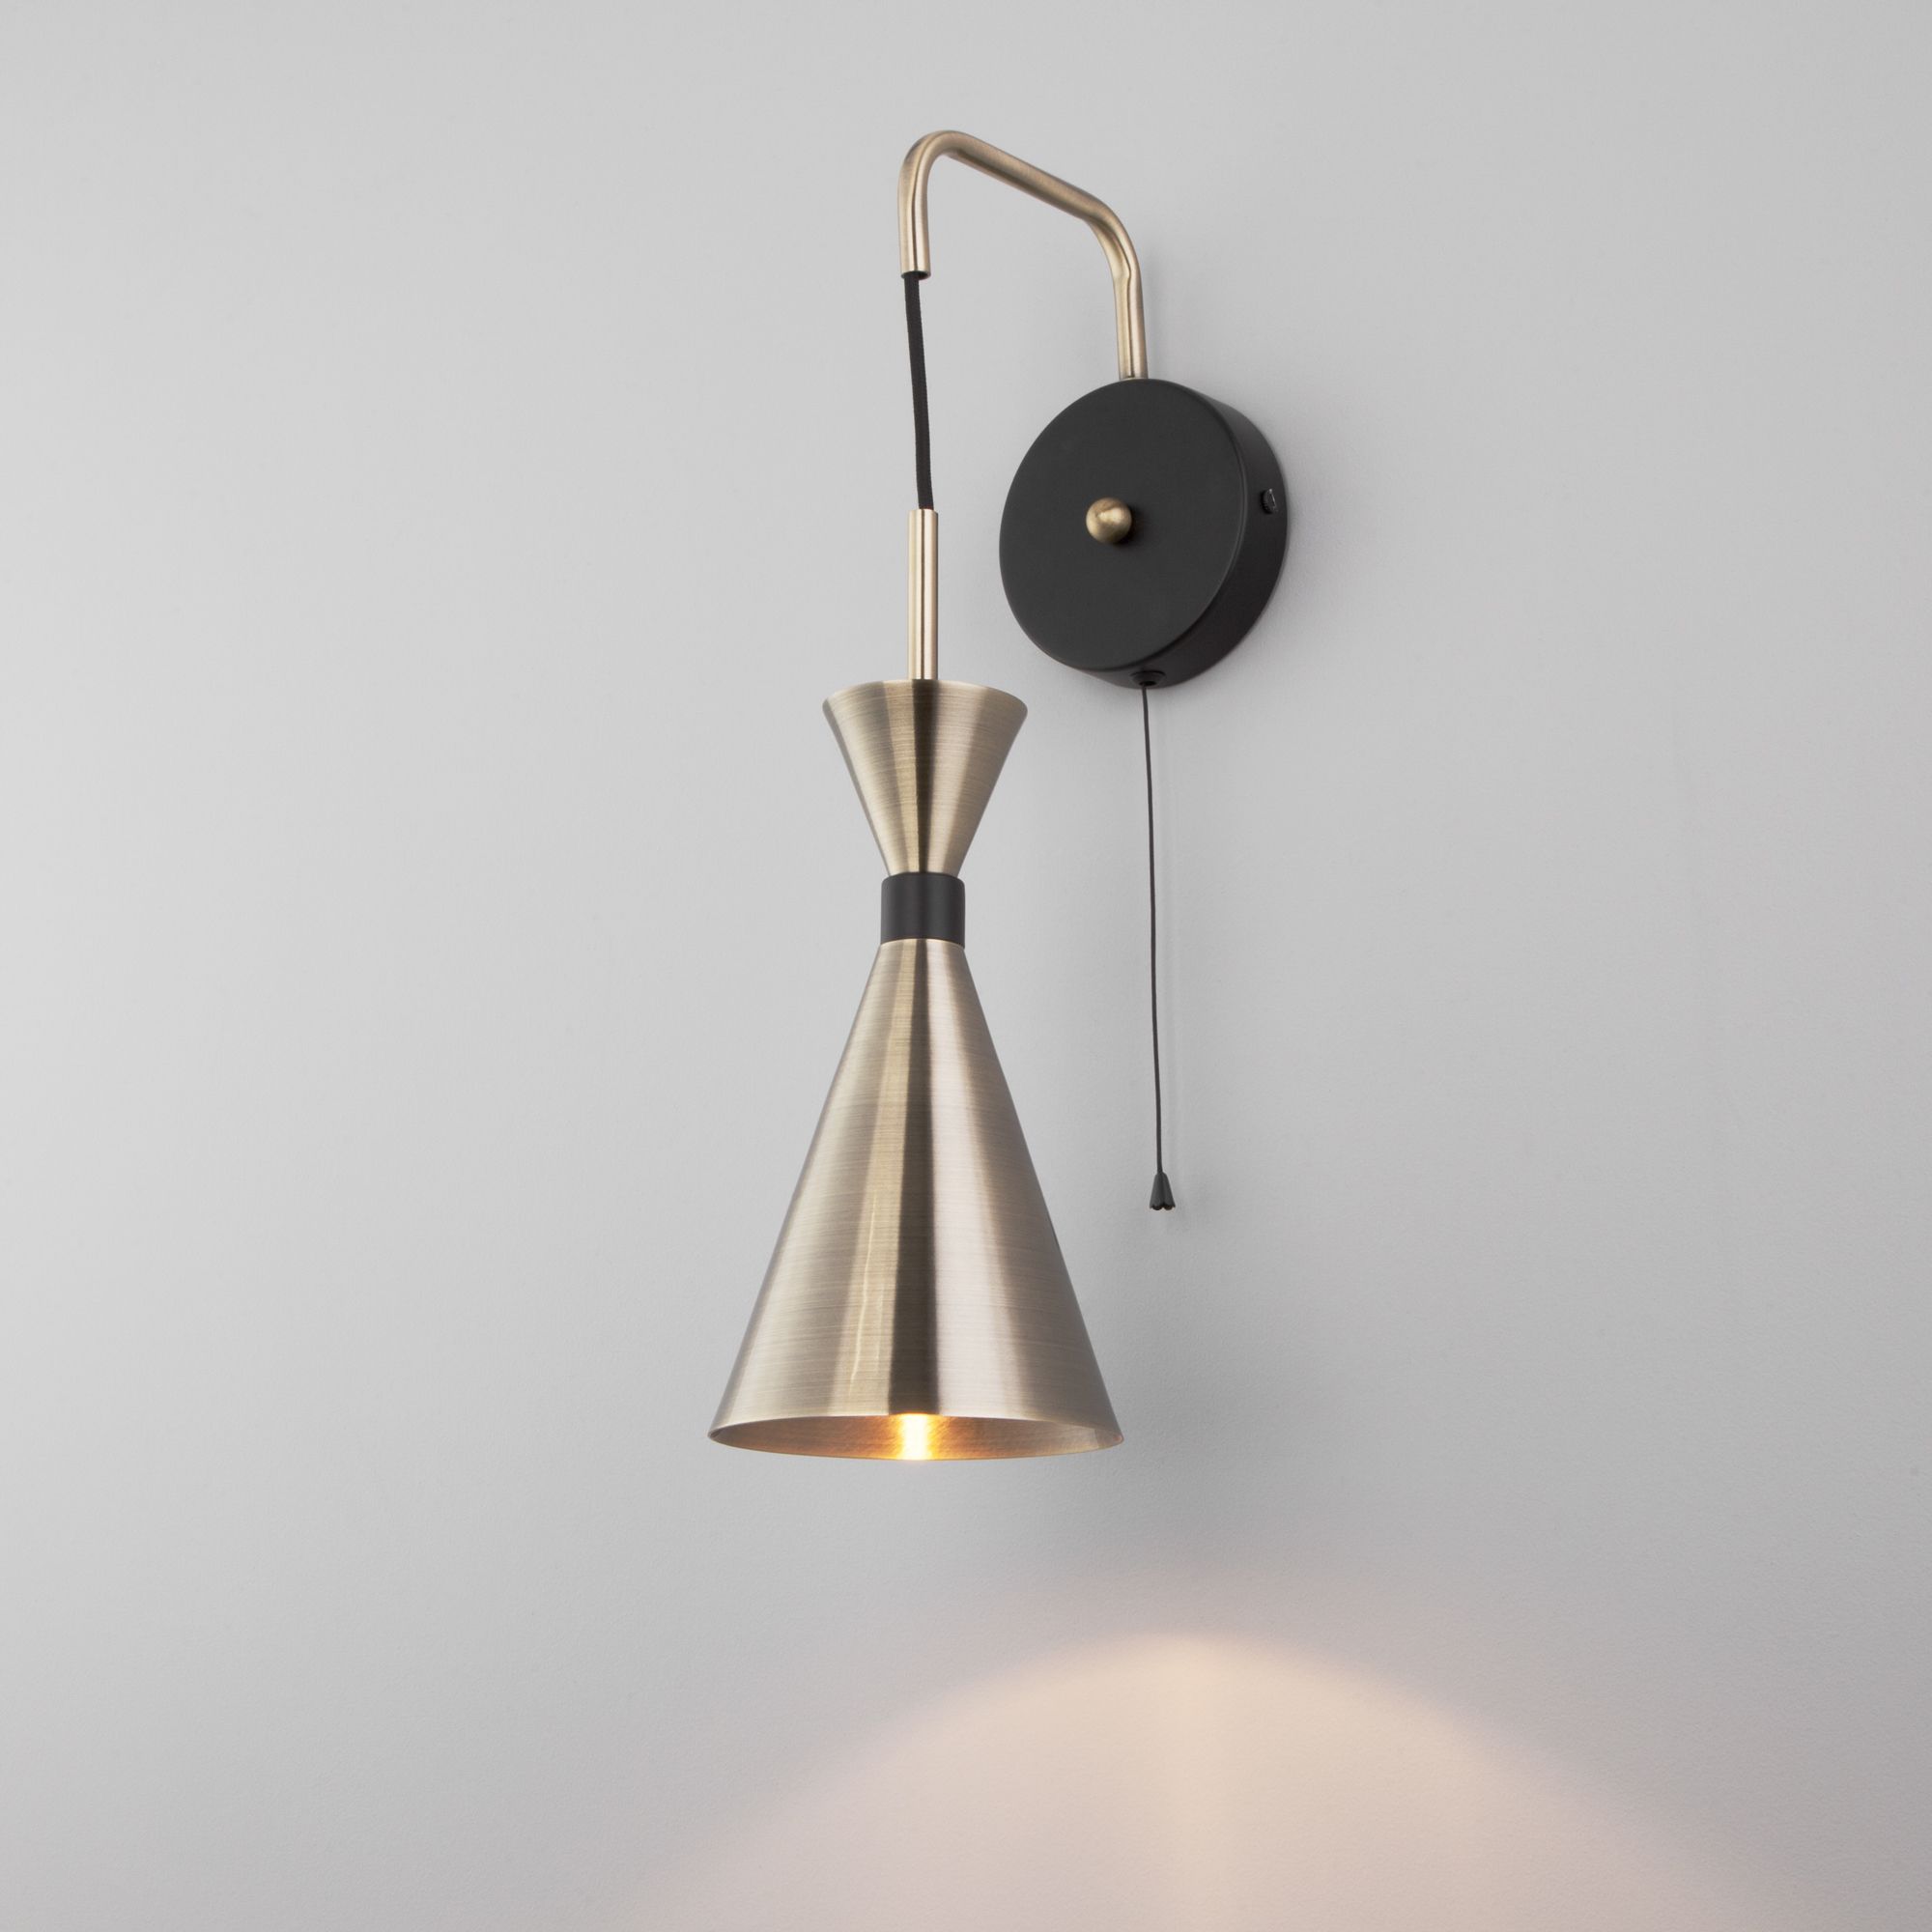 Настенный светильник в стиле лофт Bogate's Glustin 316/1 латунь / черный. Фото 1